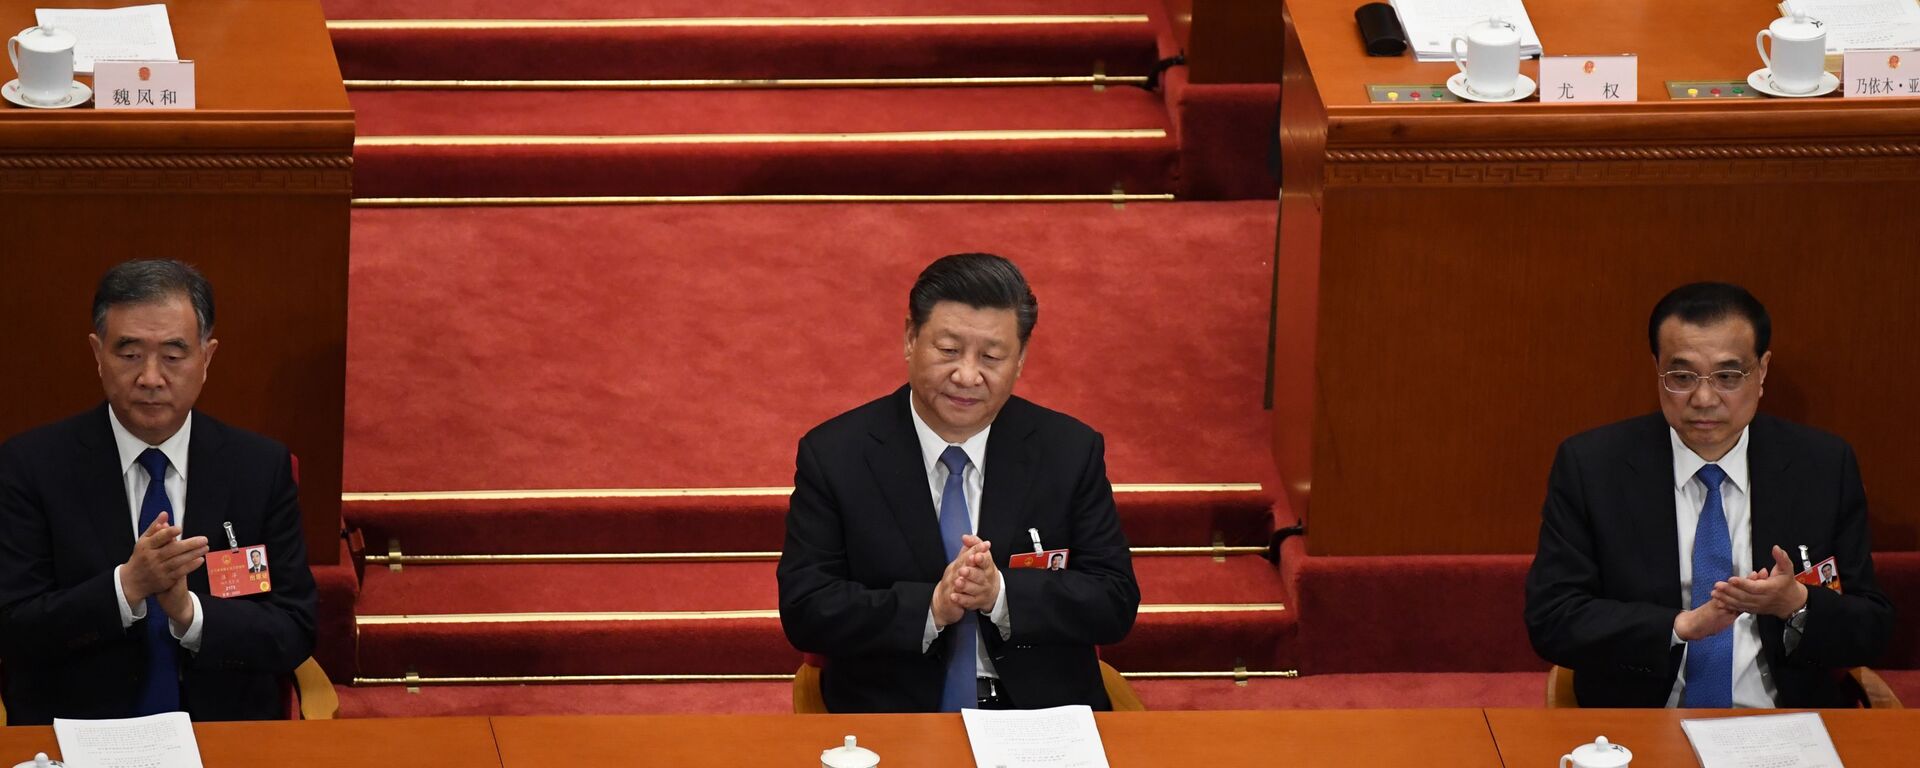 الجلسة الثانية للمجلس الوطني لنواب الشعب الصيني في قاعة الشعب الكبرى في بكين، الصين 25 مايو 2020 - سبوتنيك عربي, 1920, 22.03.2021